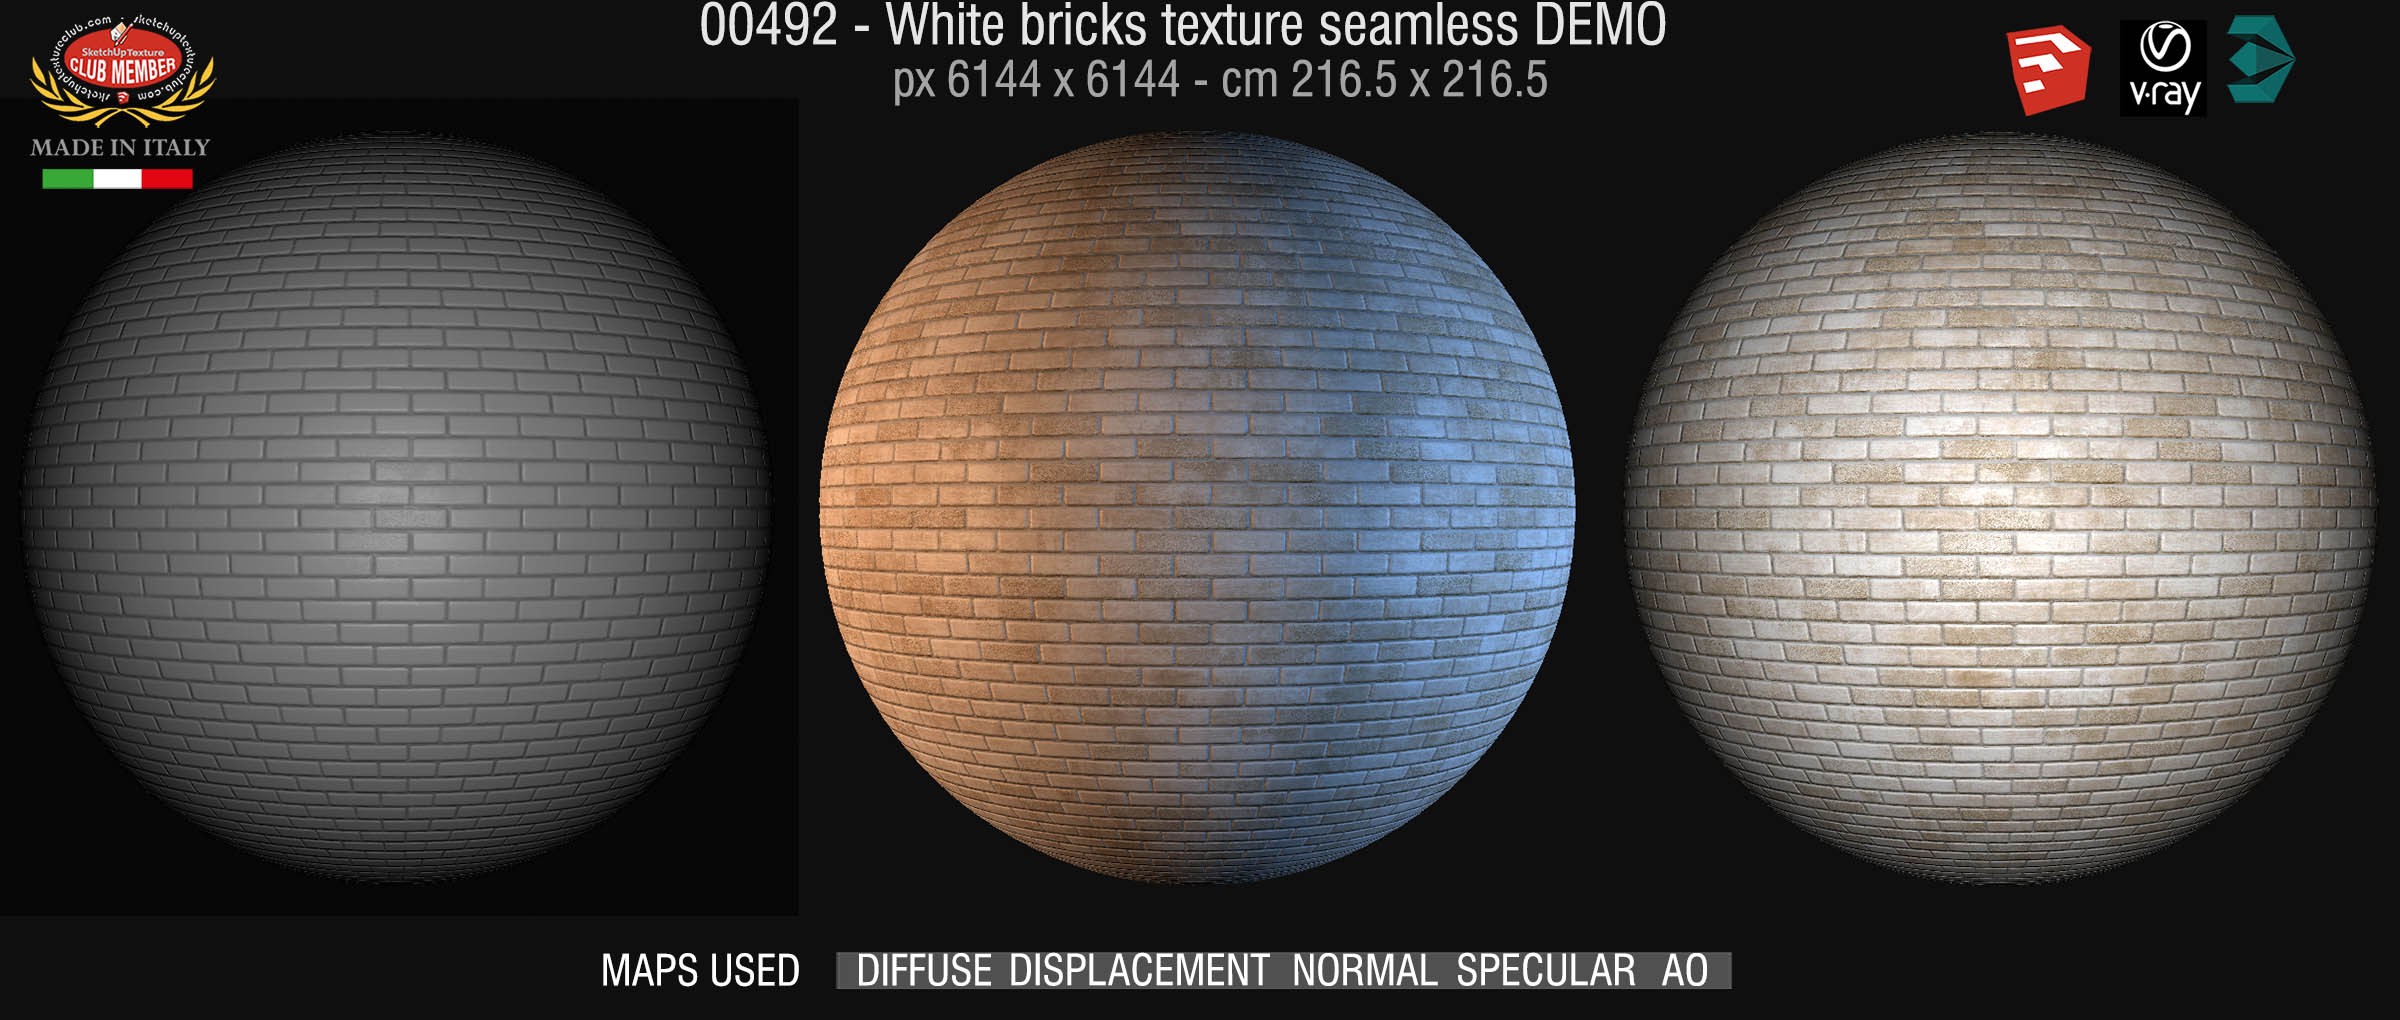 00492 White bricks texture seamless + maps DEMO